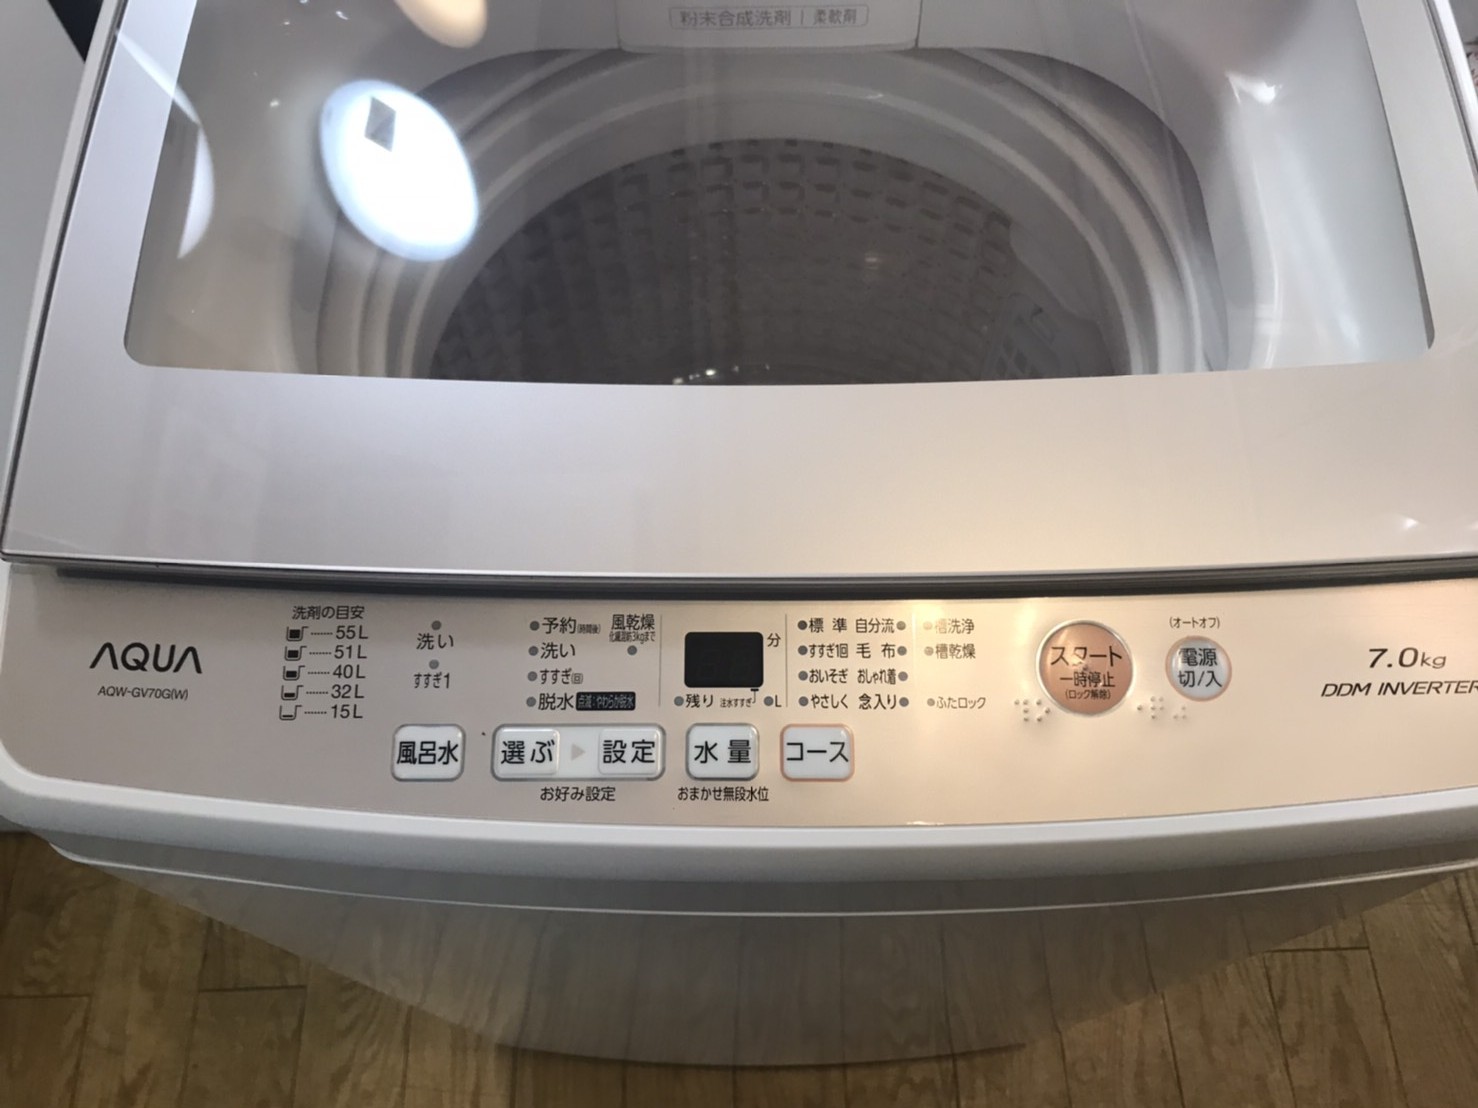 AQUA 》縦型洗濯機AQW-GV700E - 生活家電